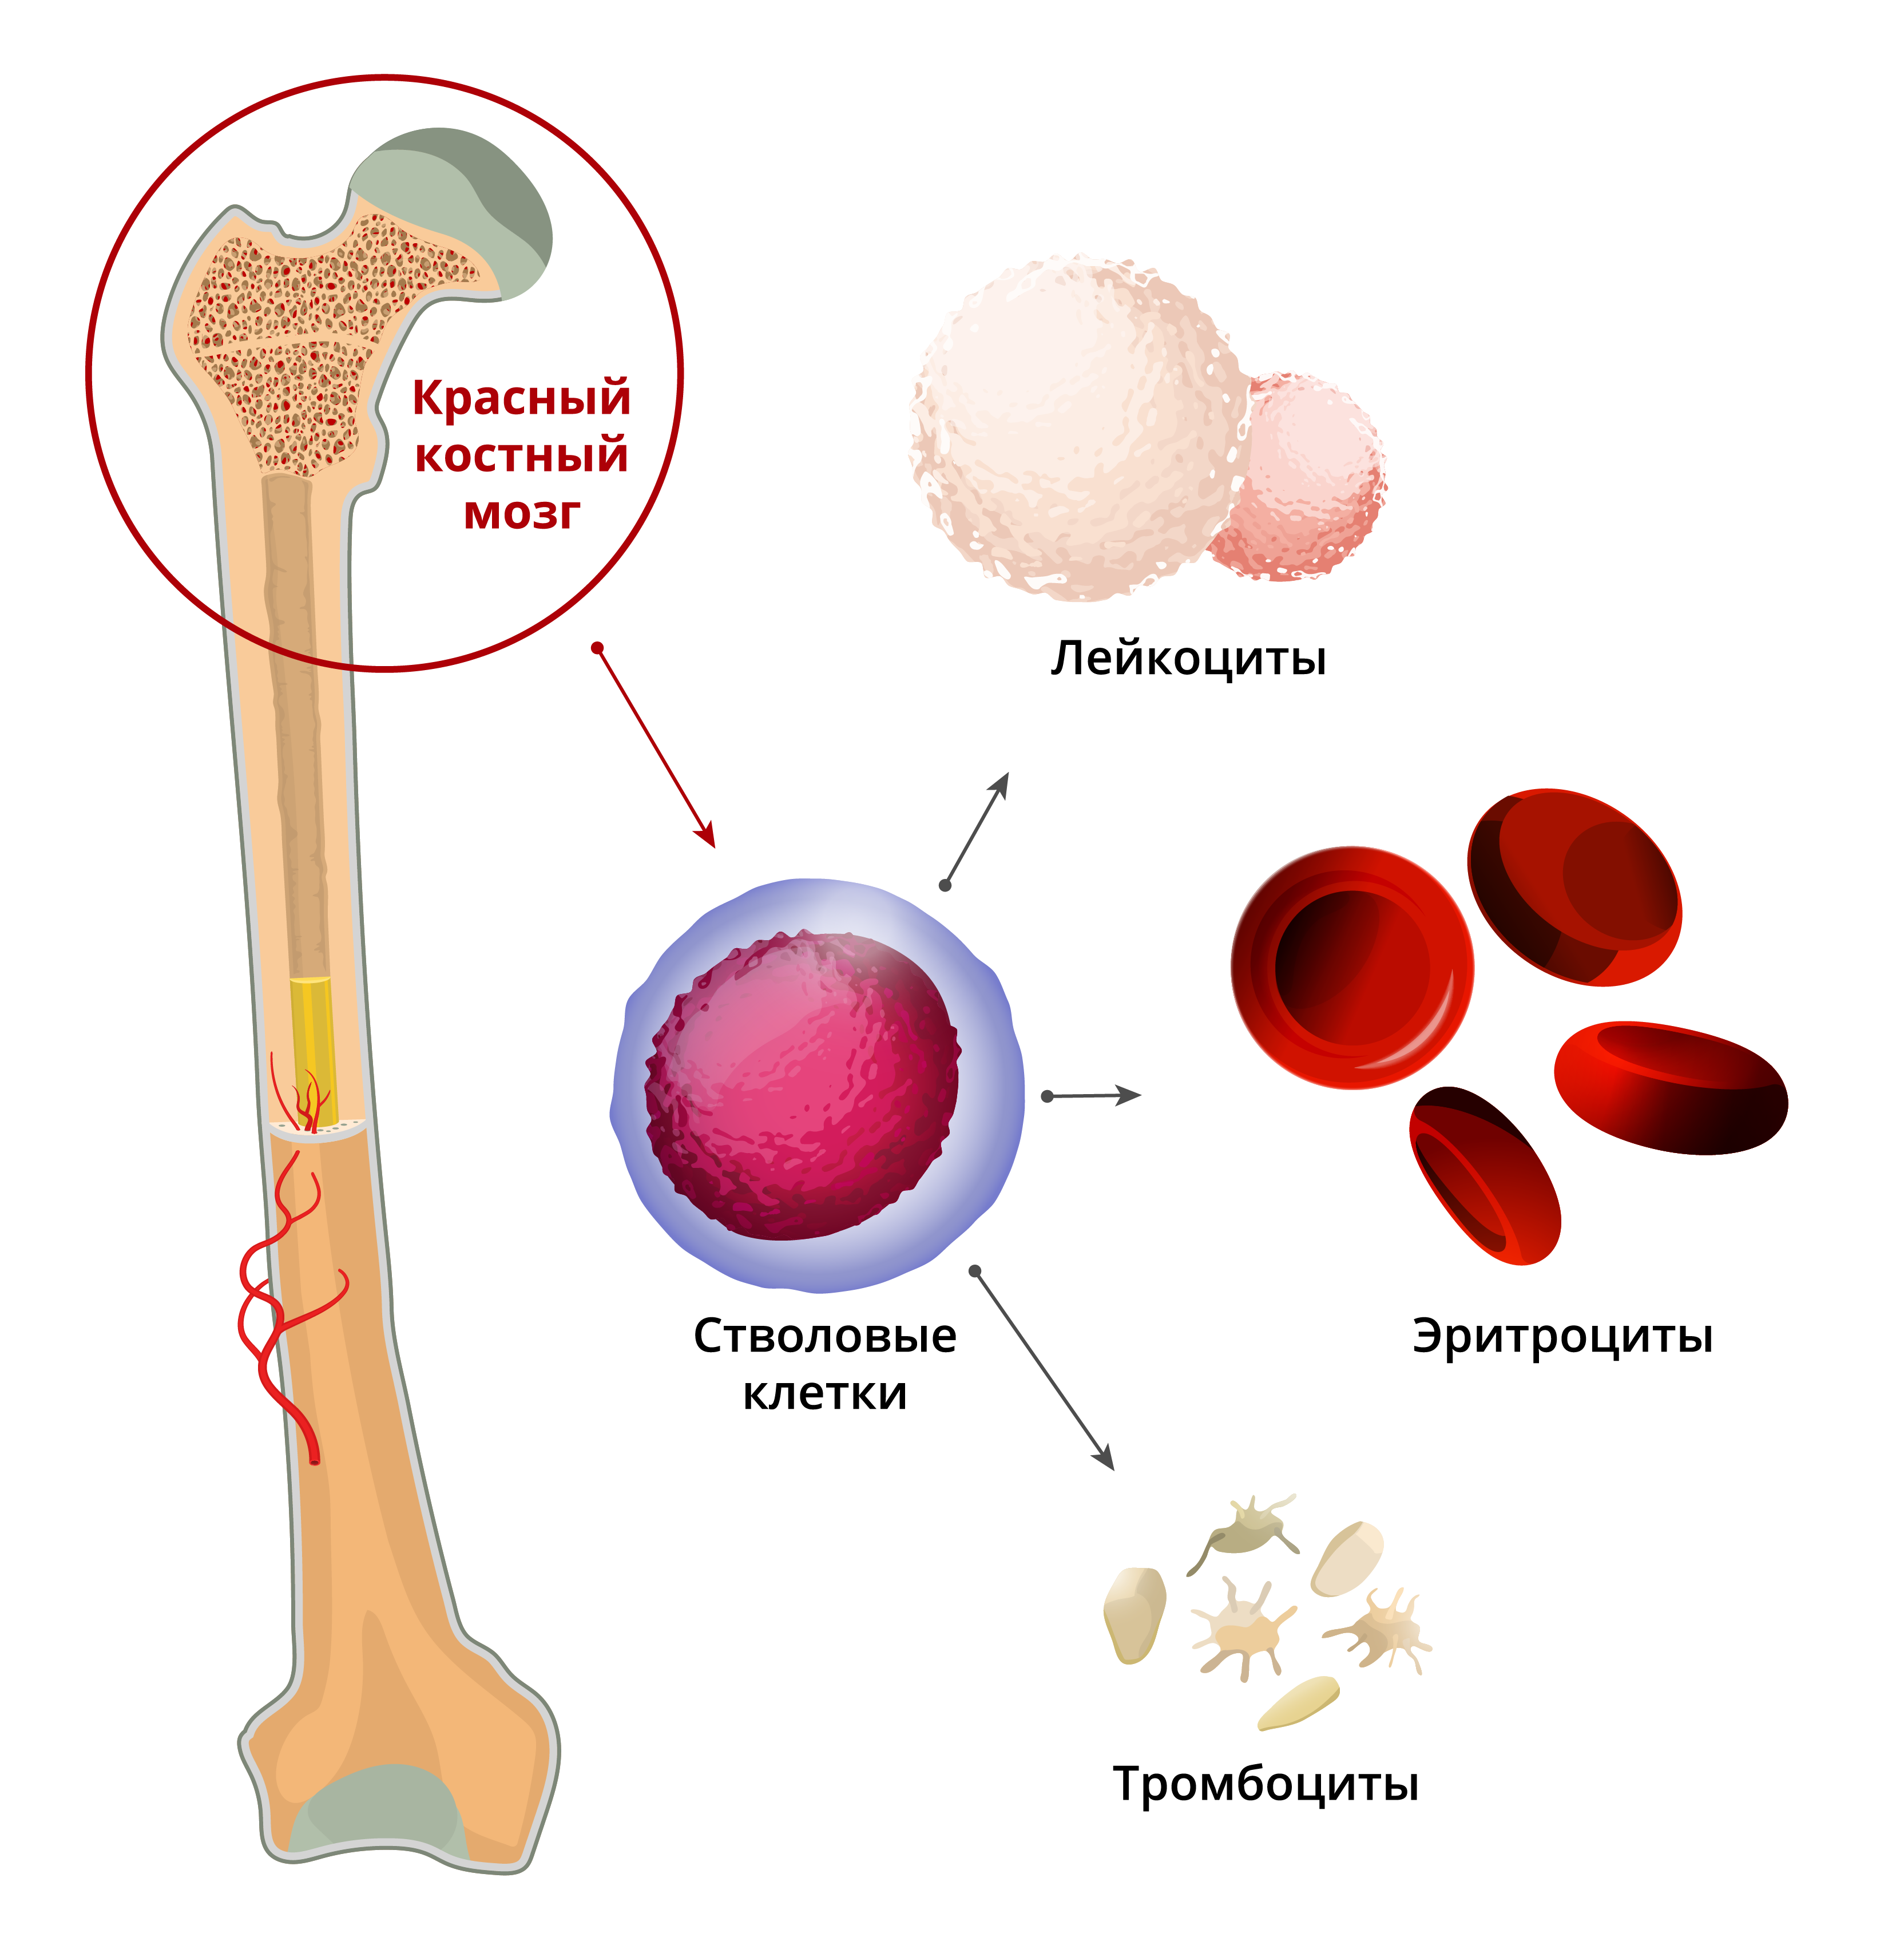 Стволовых клеток красного костного мозга:. Гемопоэтические компоненты красного костного мозга. Красный костный мозг анатомические образования. Остеогенные клетки красного костного мозга.